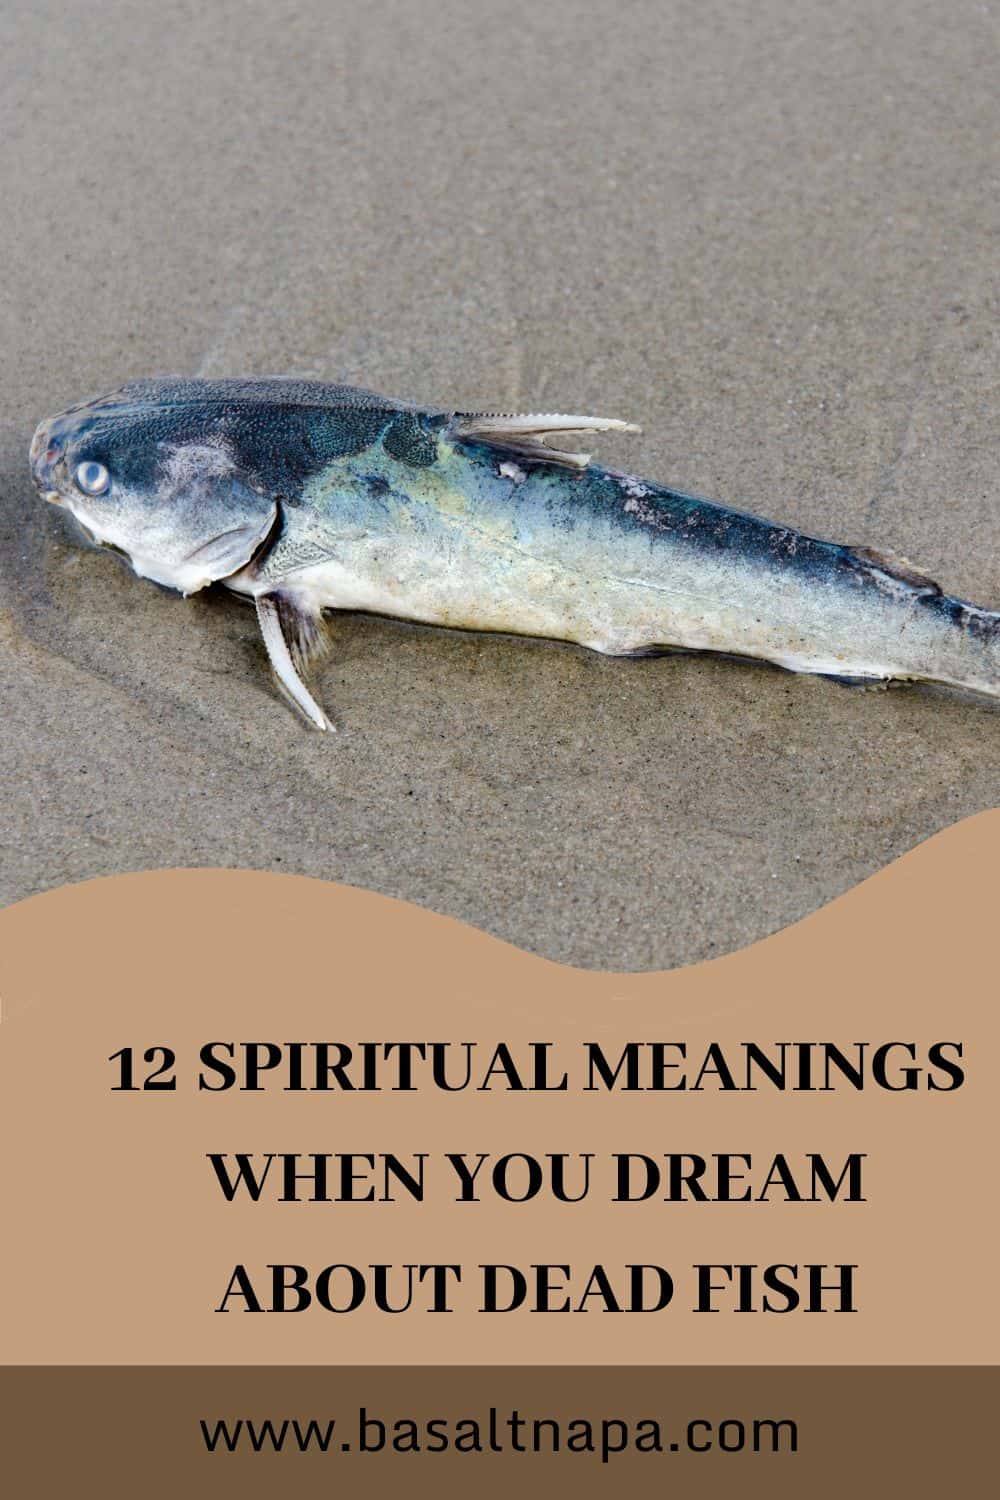  6 مردہ مچھلی خواب کی تعبیر